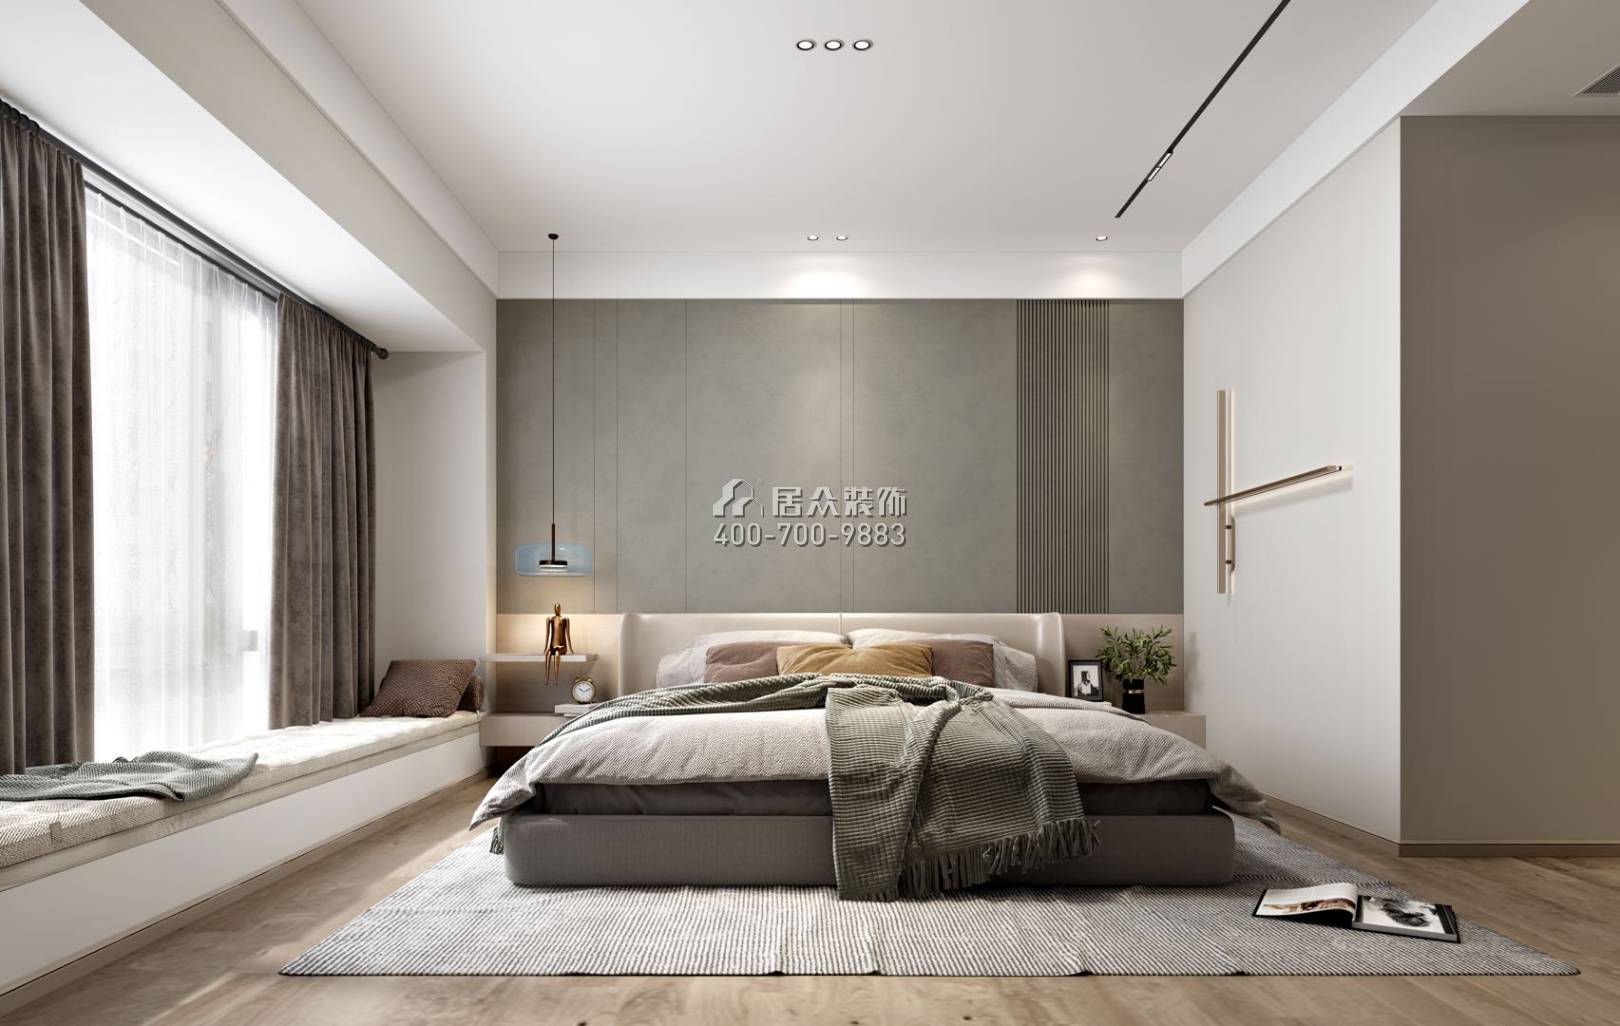 翠湖香山别苑148平方米现代简约风格平层户型卧室装修效果图